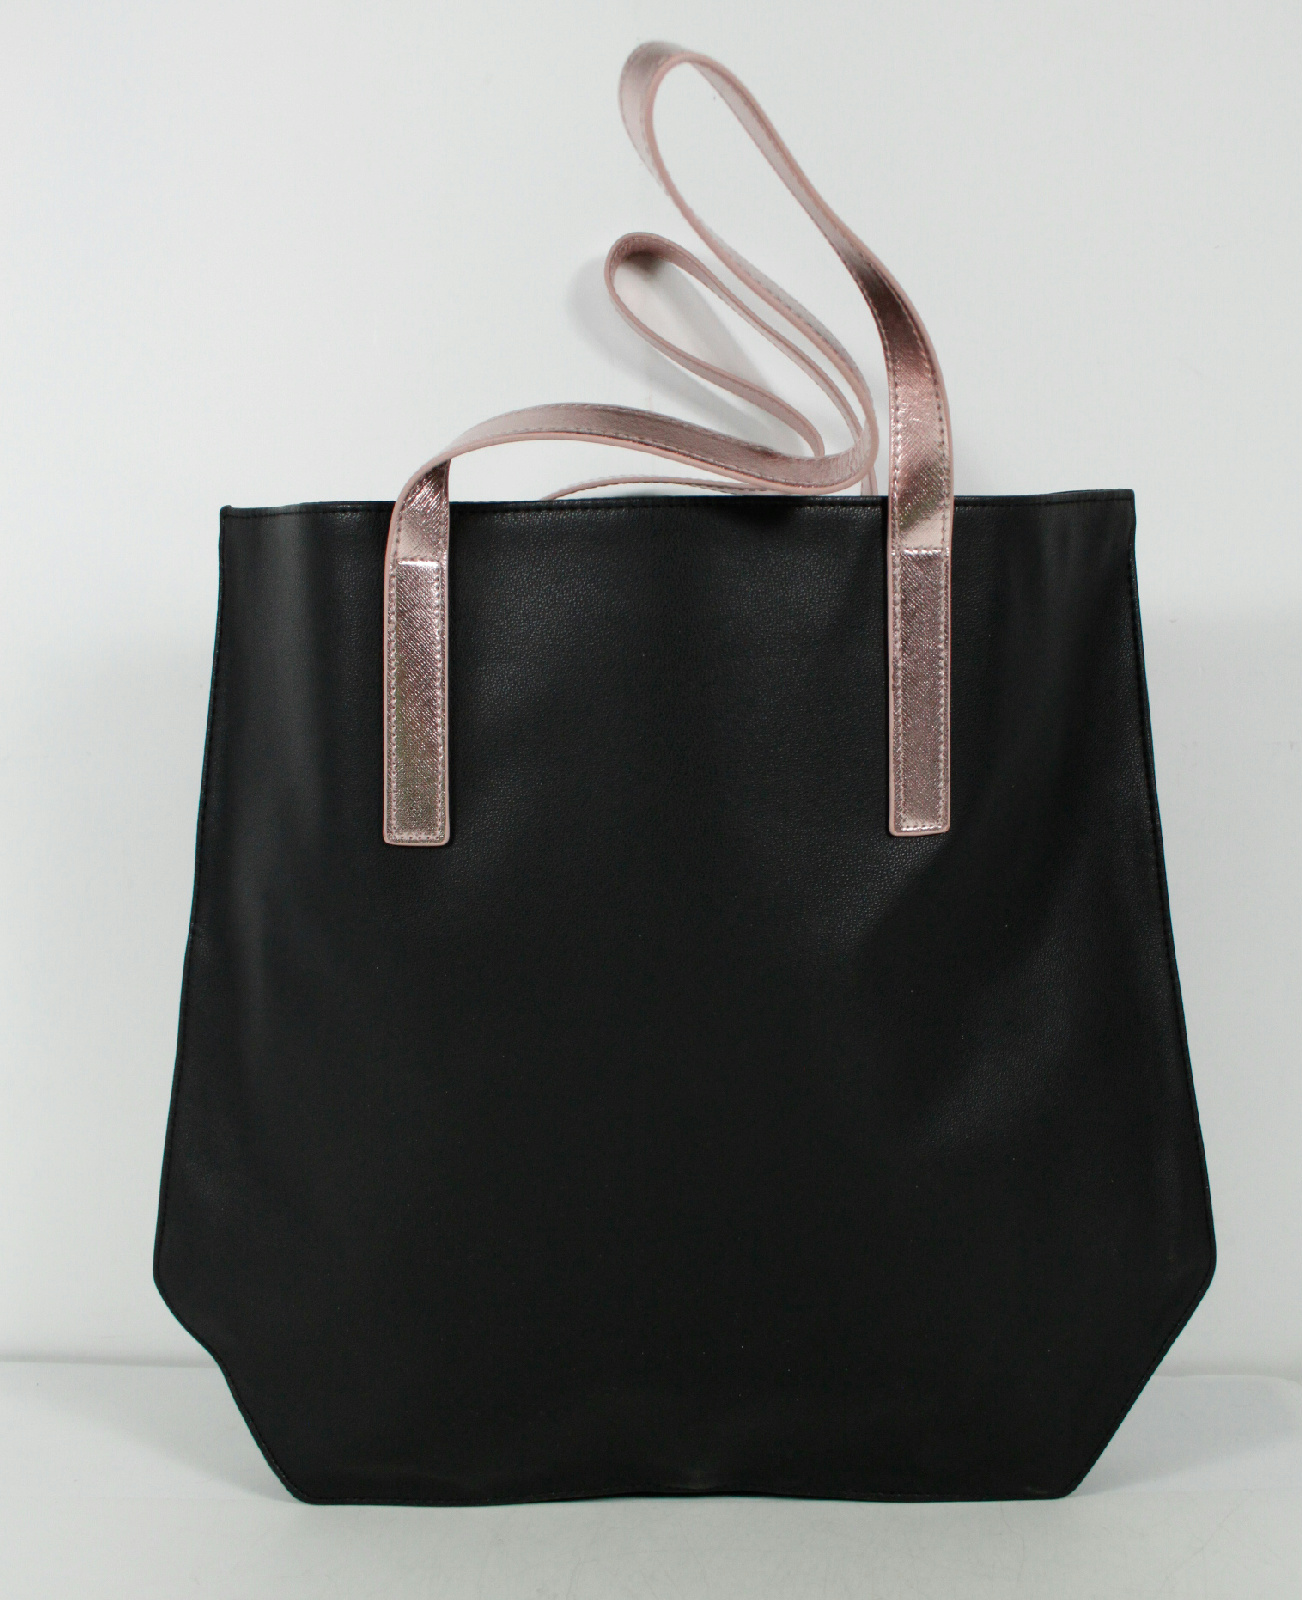 Givenchy Solid Black Rose Gold Pink Tote Shoulder Bag Purse | eBay